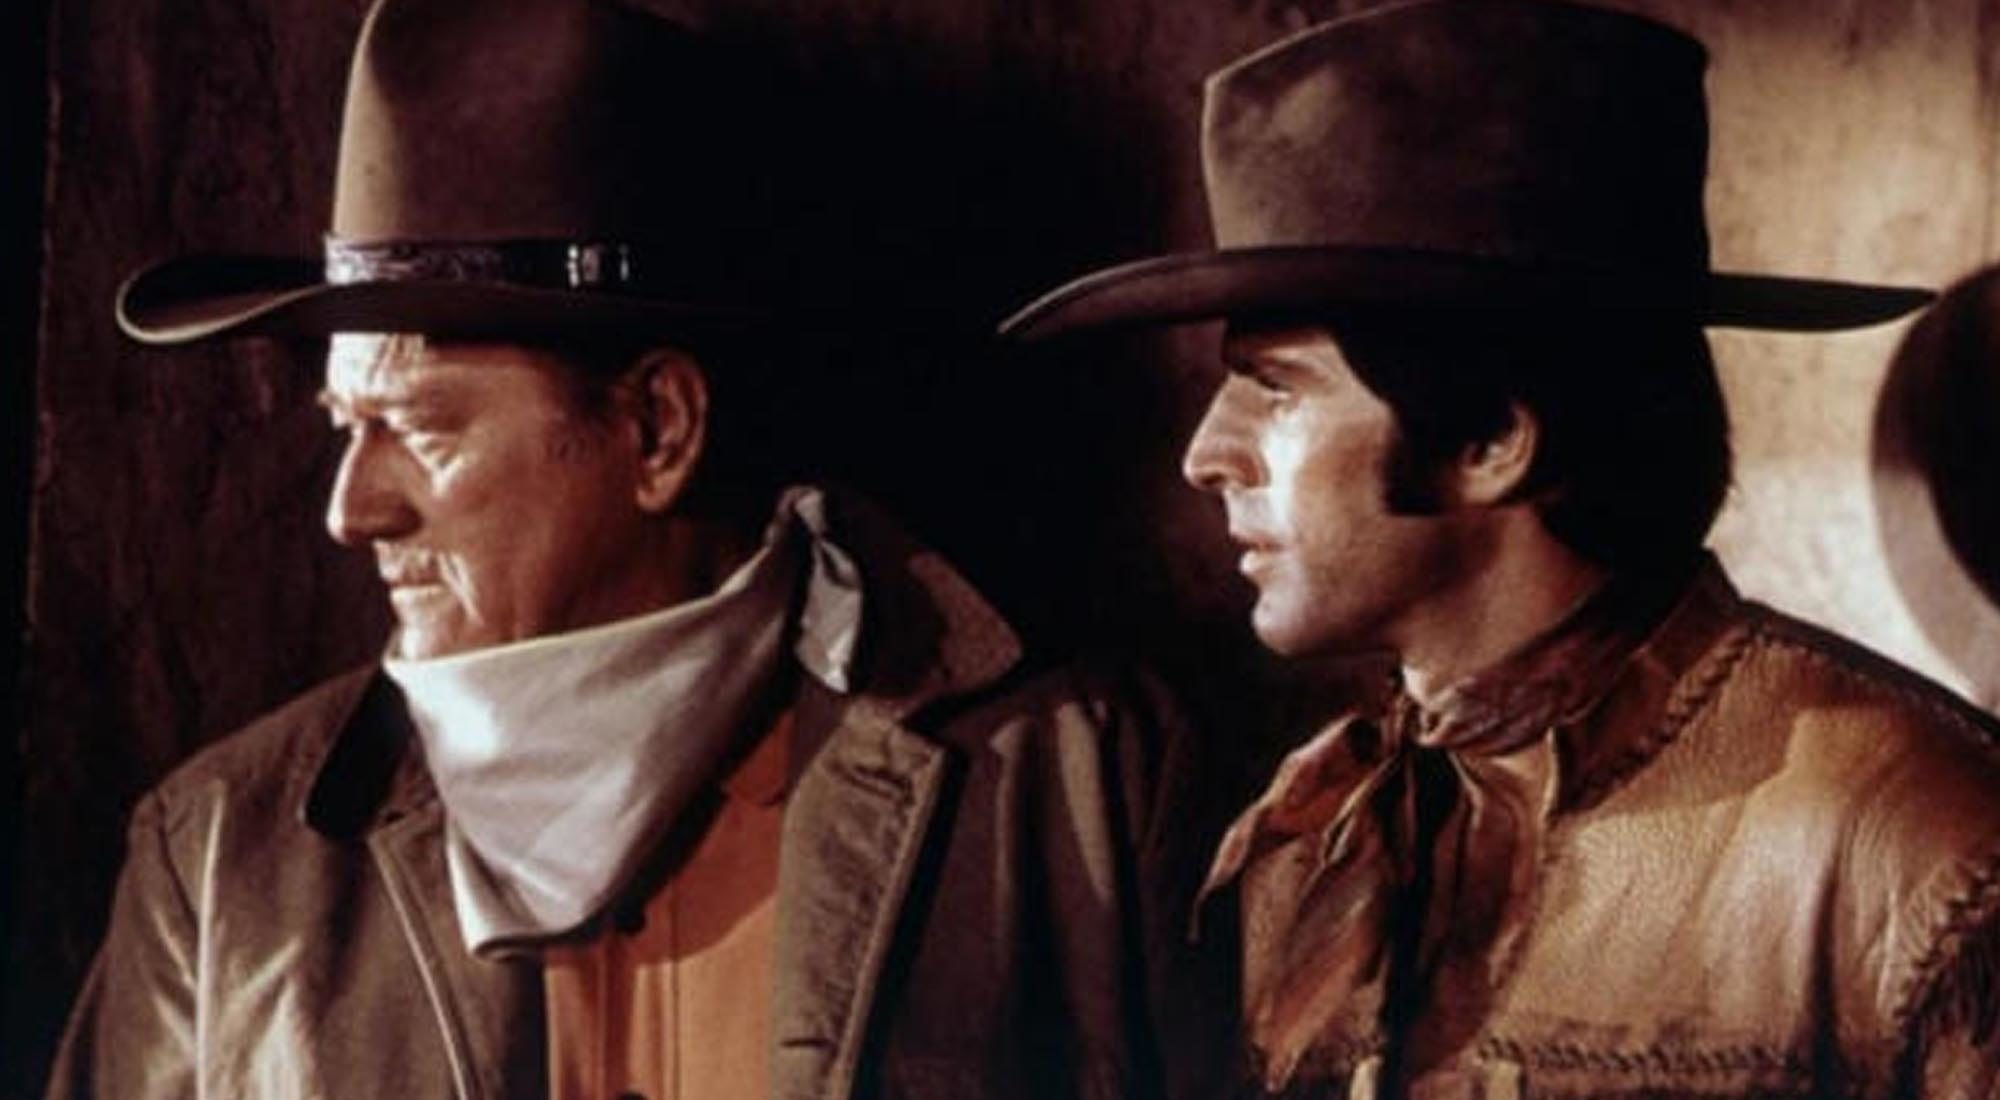 Fotograma de la película "Río Lobo" (1970)